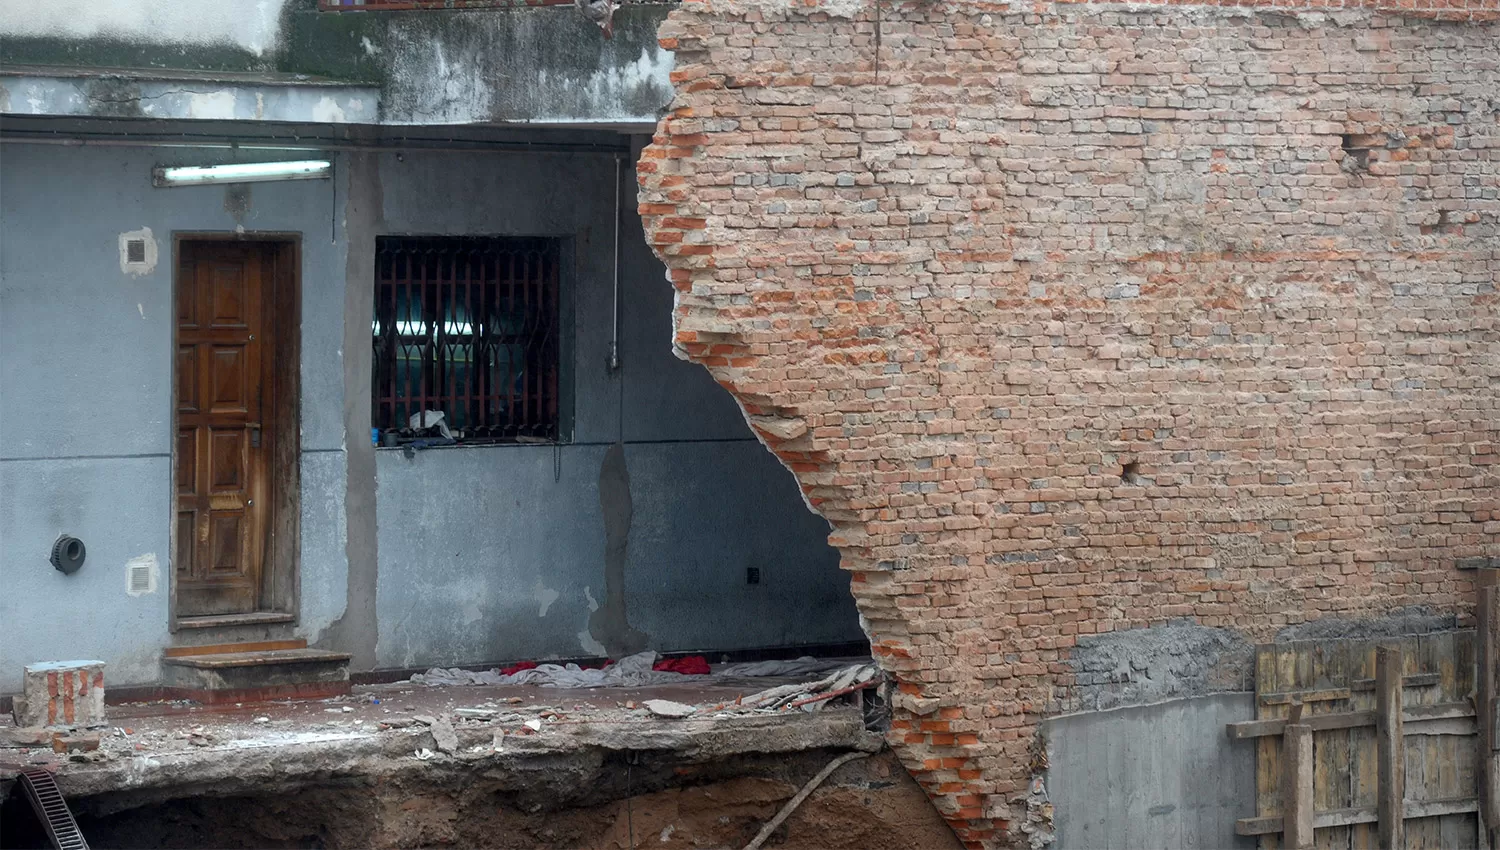 INMUEBLE DAÑADO. Se derrumbó una parte de la casa de Ángel Ale. ARCHIVO LA GACETA / FOTO DE FRANCO VERA